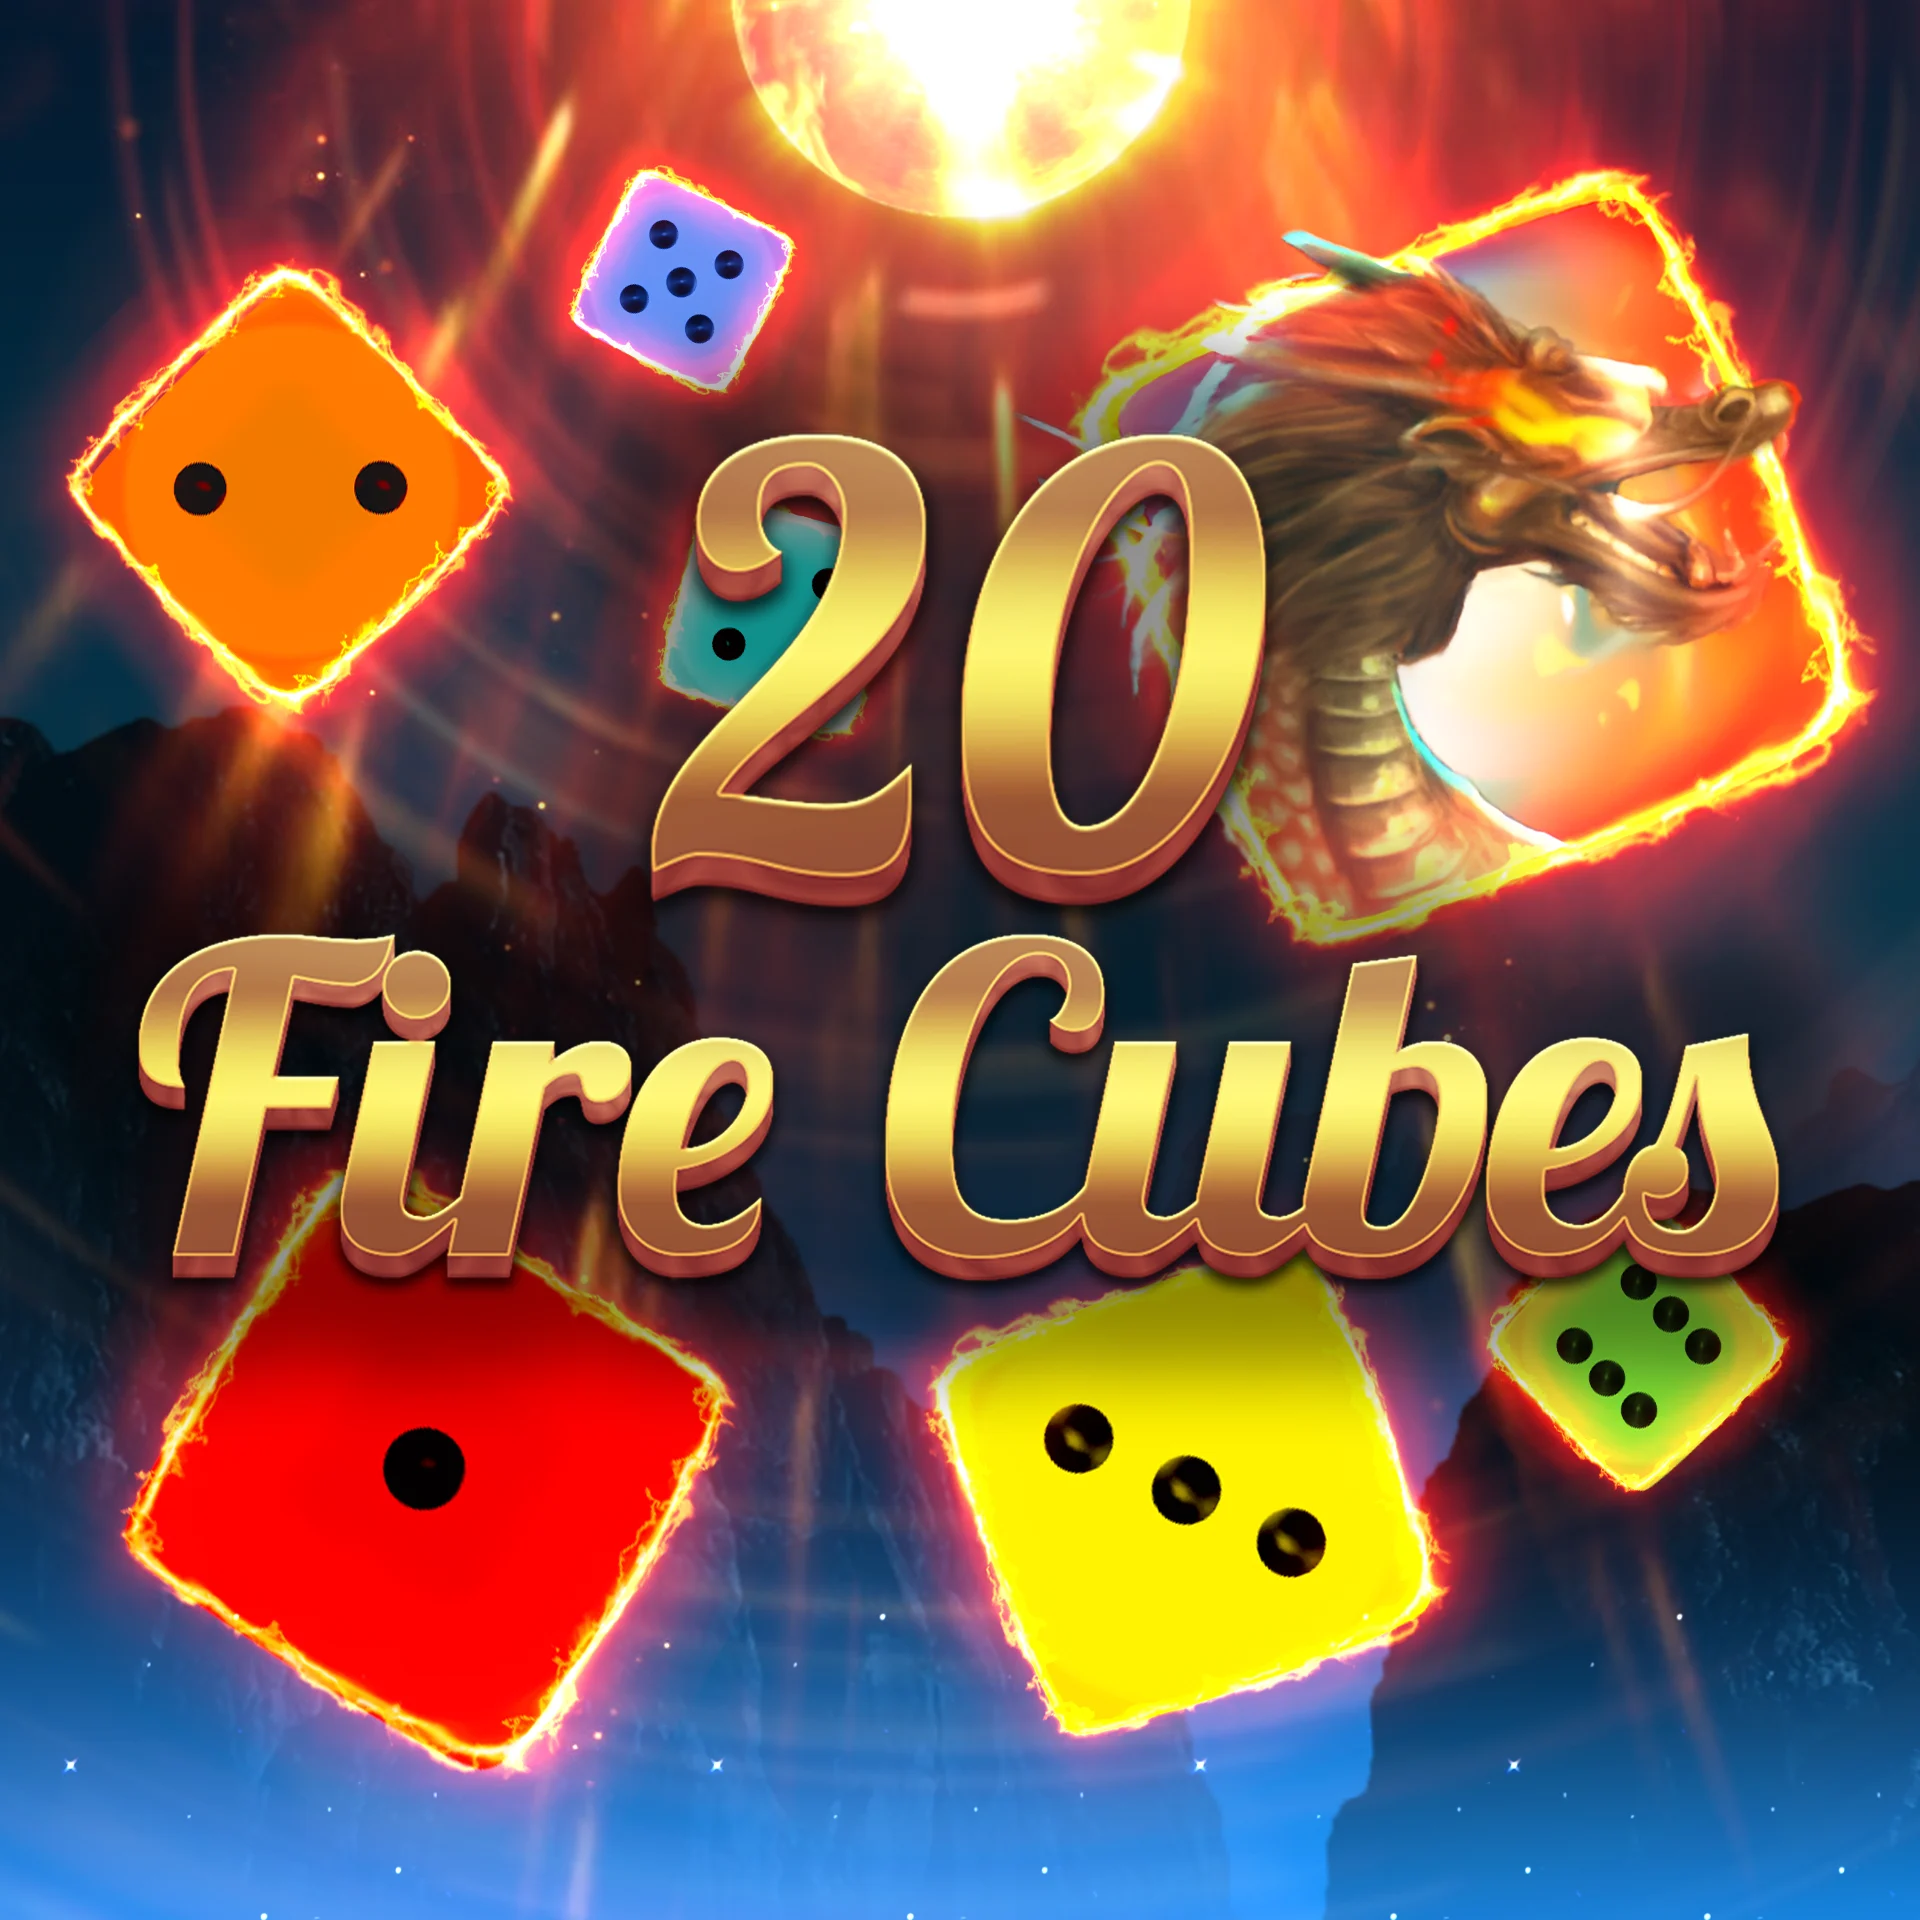 20 Fire Cubes